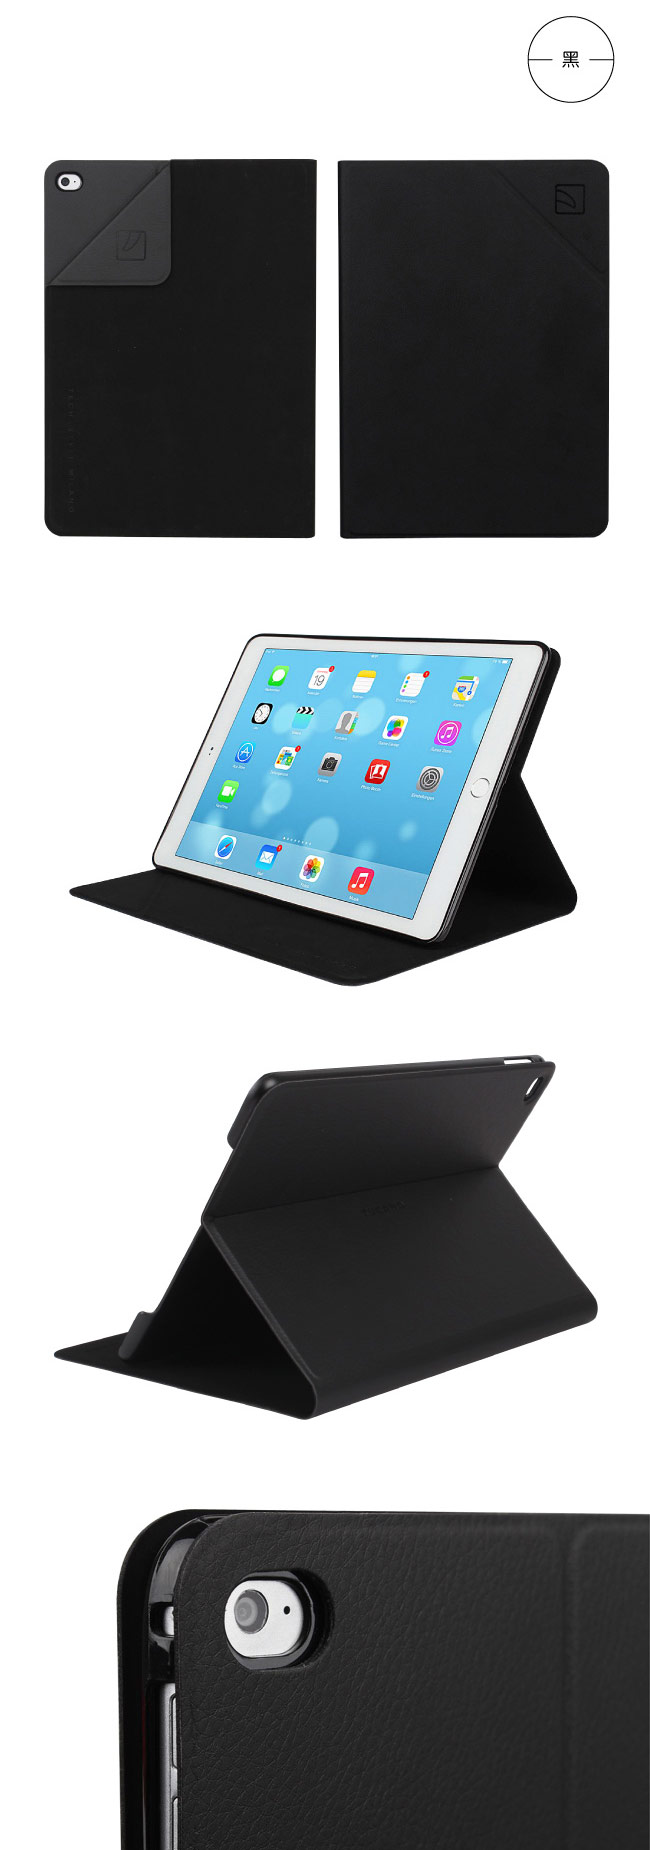 TUCANO iPad Air2 Angolo 時尚可站立式皮革紋保護套-藍